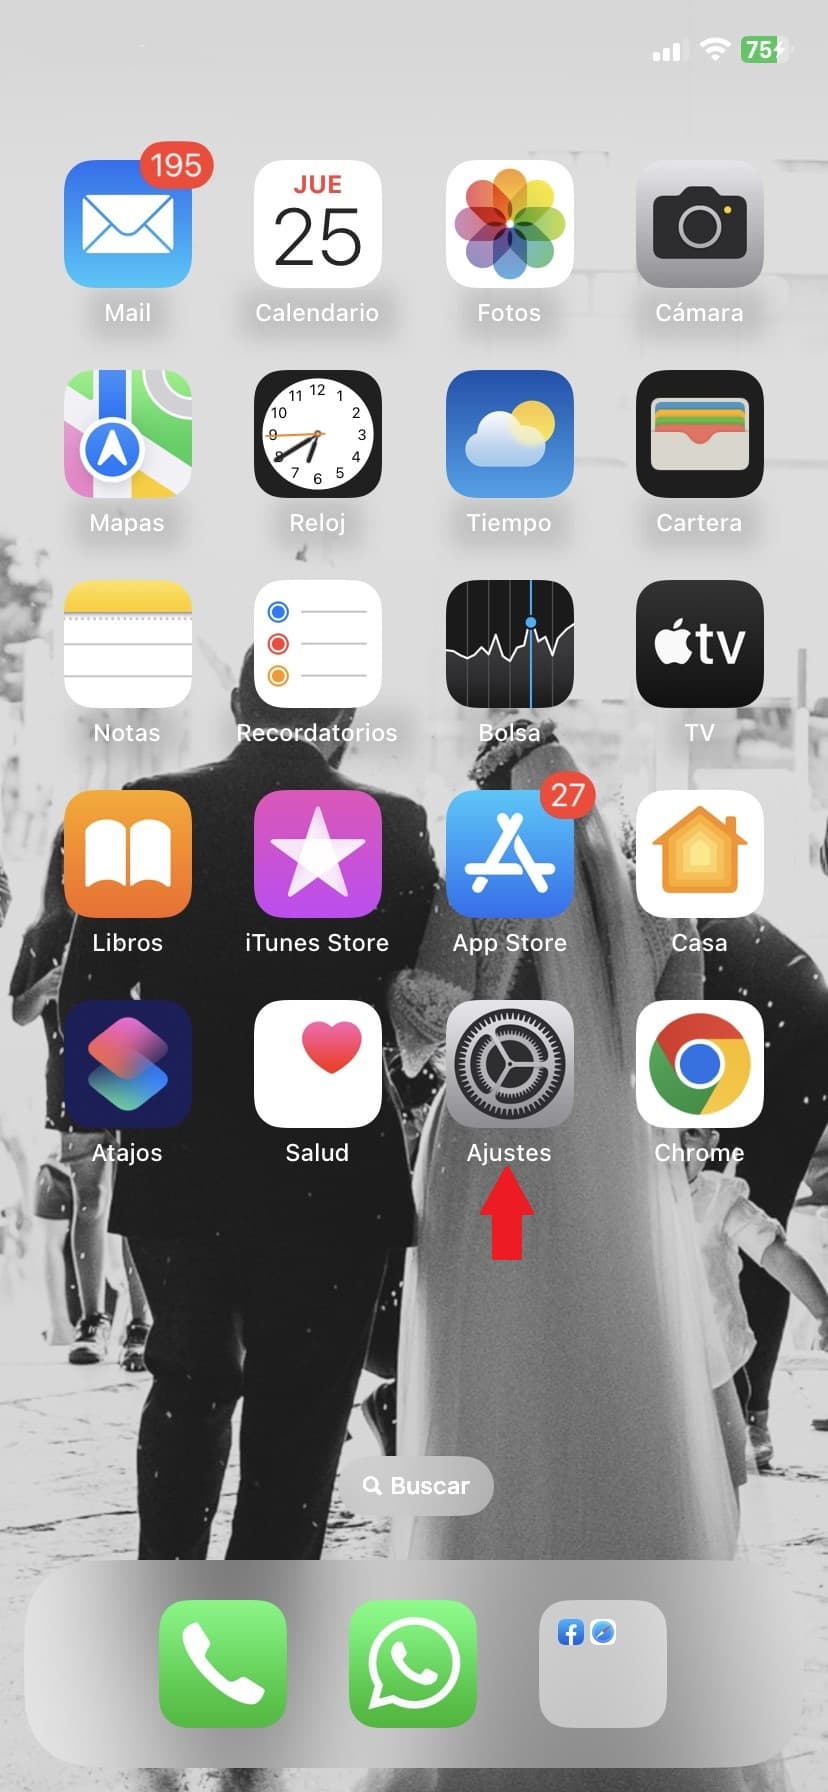 paso 1 desactivar notificaciones despues de esconder una app en el iphone